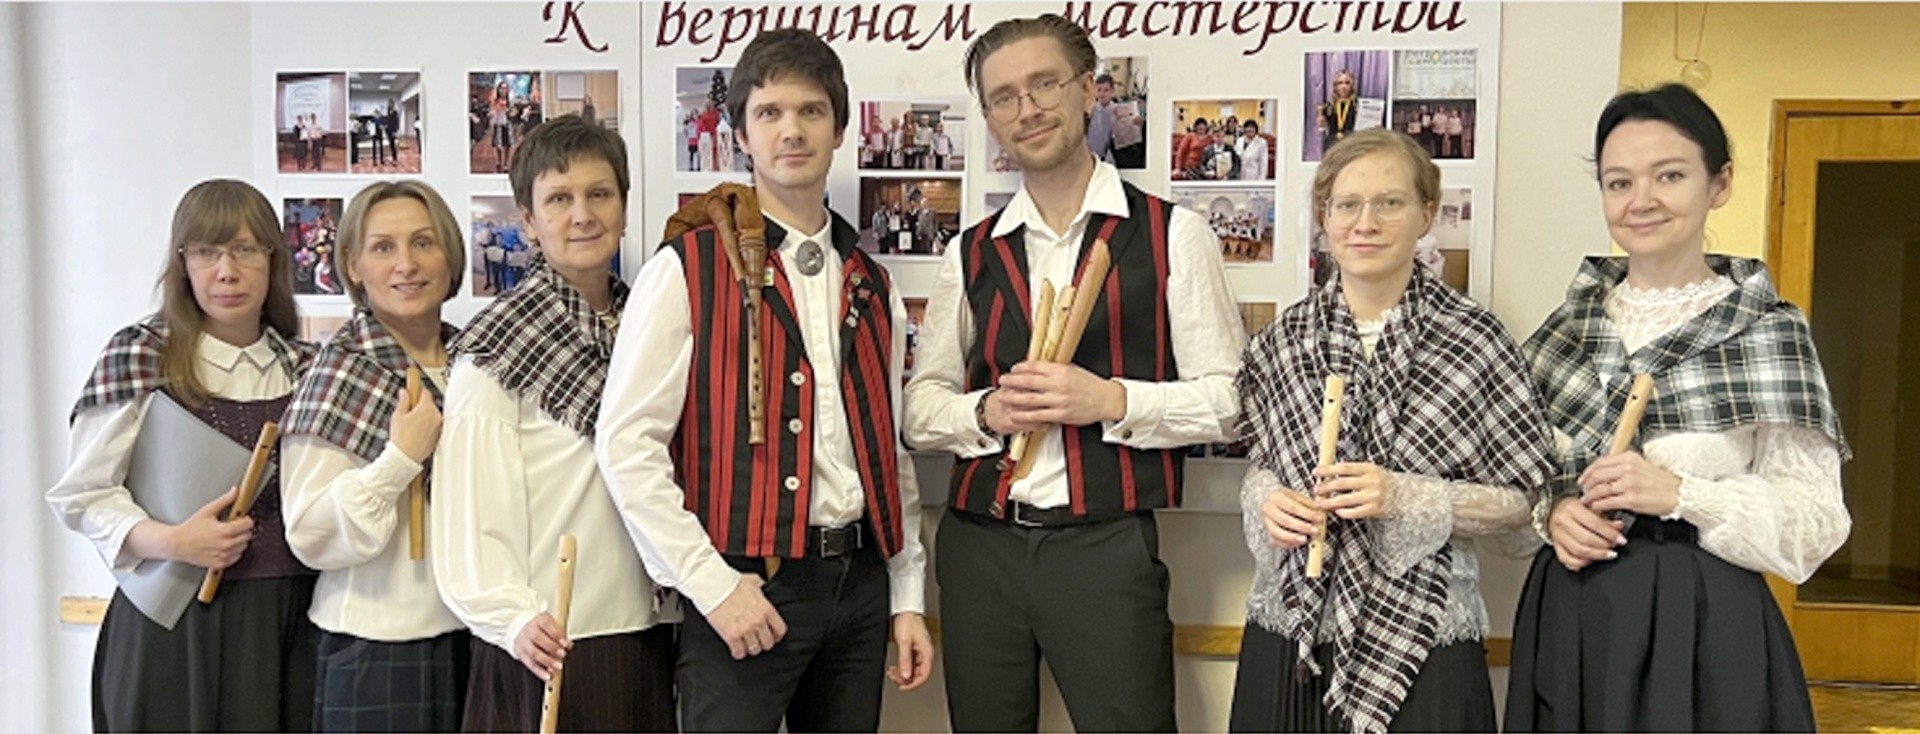 Aerofoniyhtye on Karjalan ensimmäinen ja ainoa aerofonisoittajien yhtye. Kuva: Aerofoniyhtye-ryhmän VKontakte-sivu